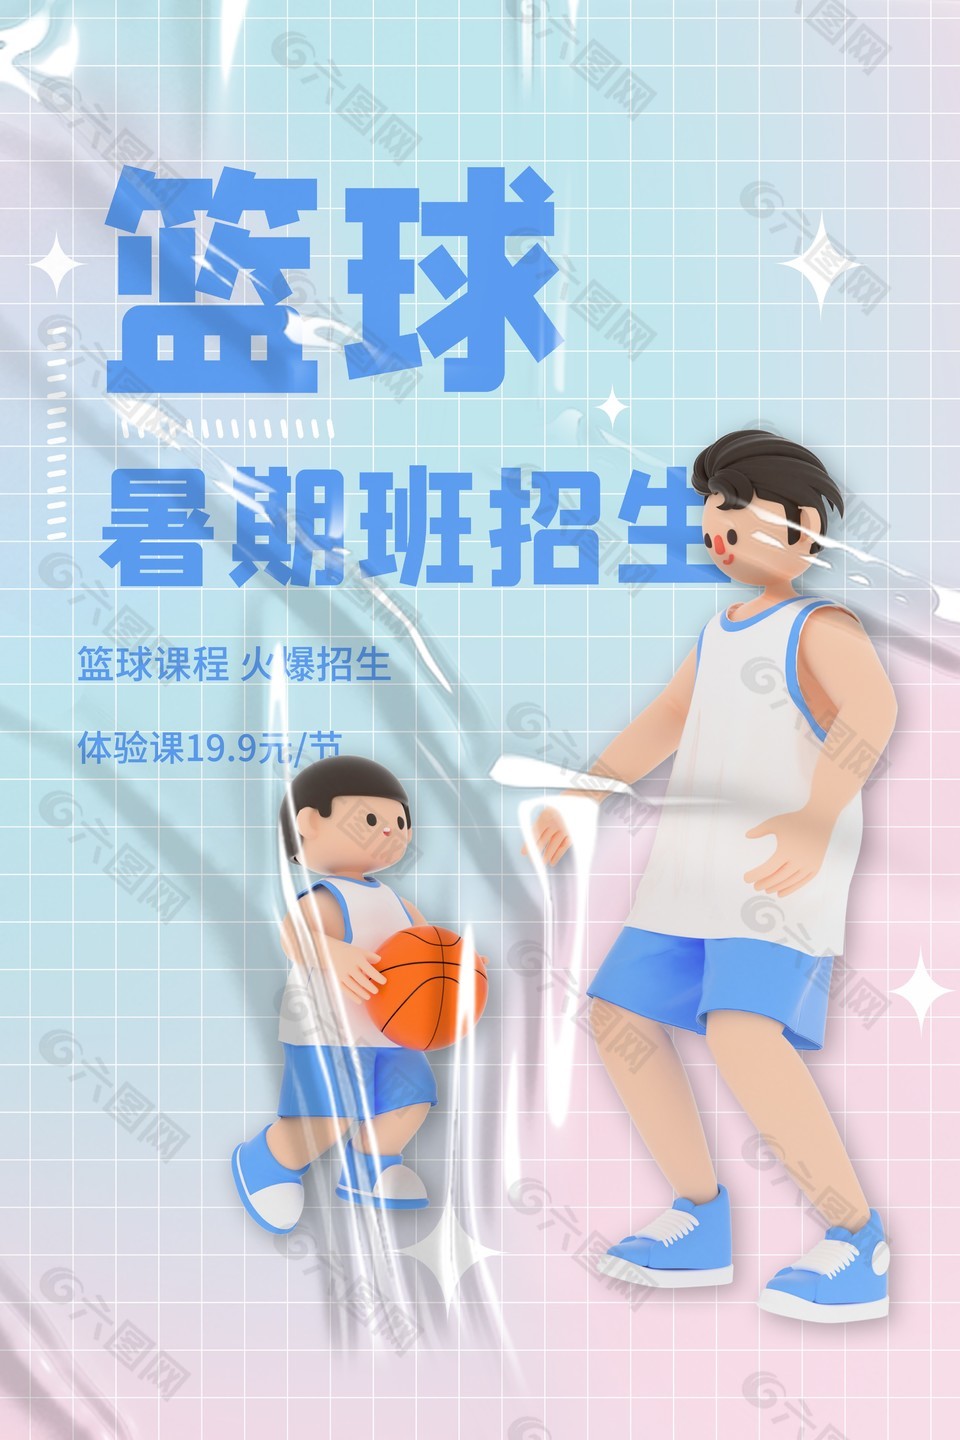 篮球班招生创意3D人物插画海报